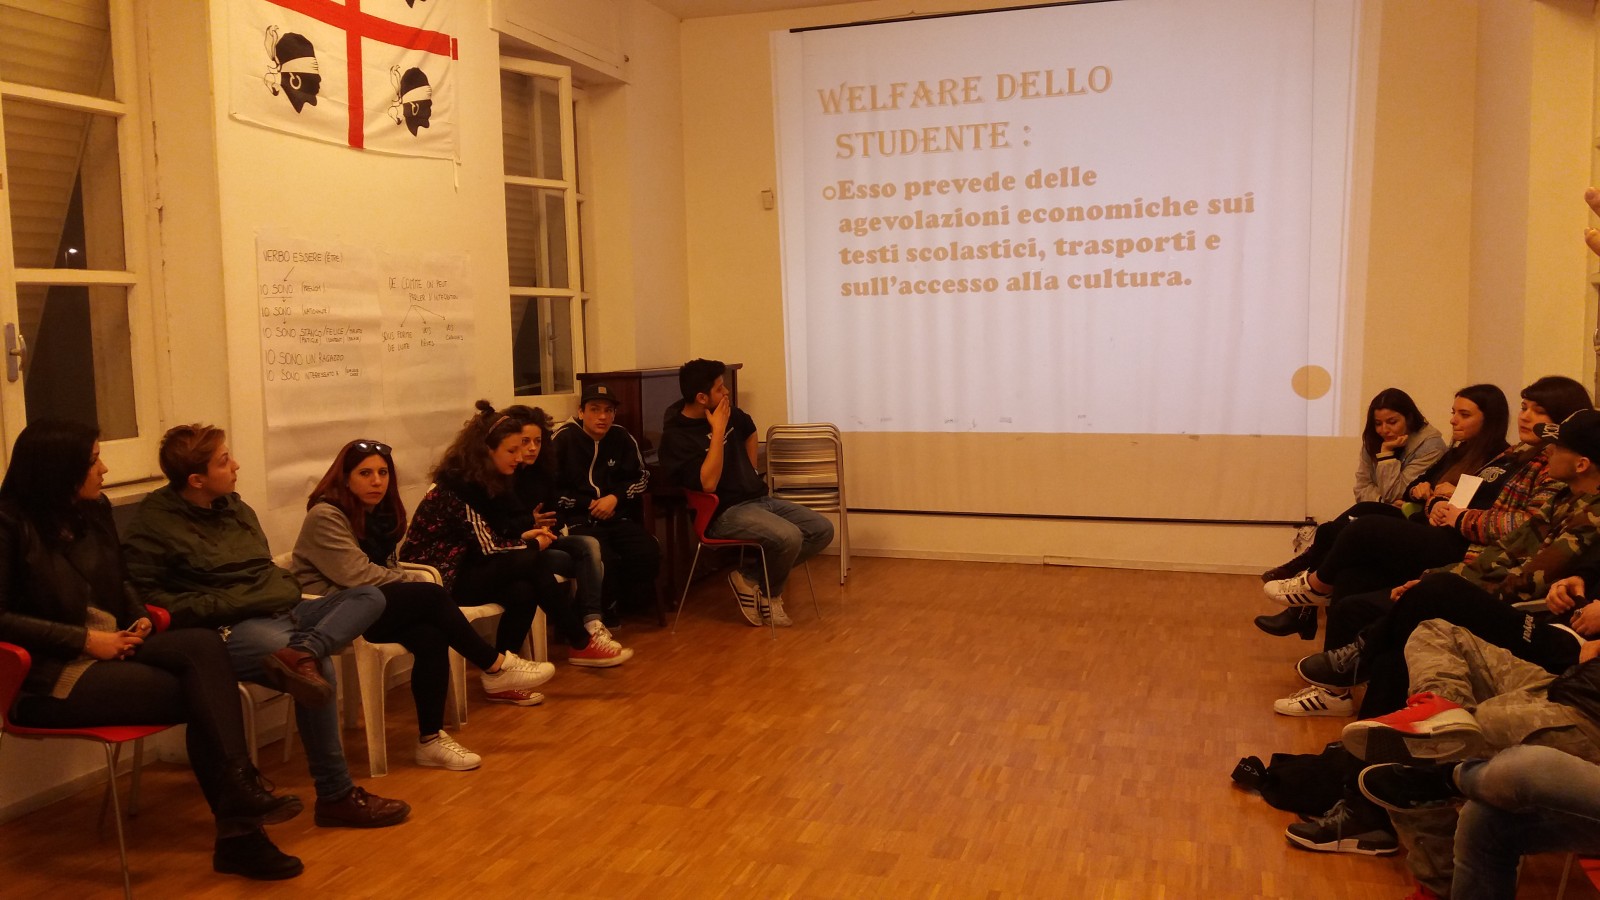 Le idee del Collettivo Autonomo studentesco di Benevento